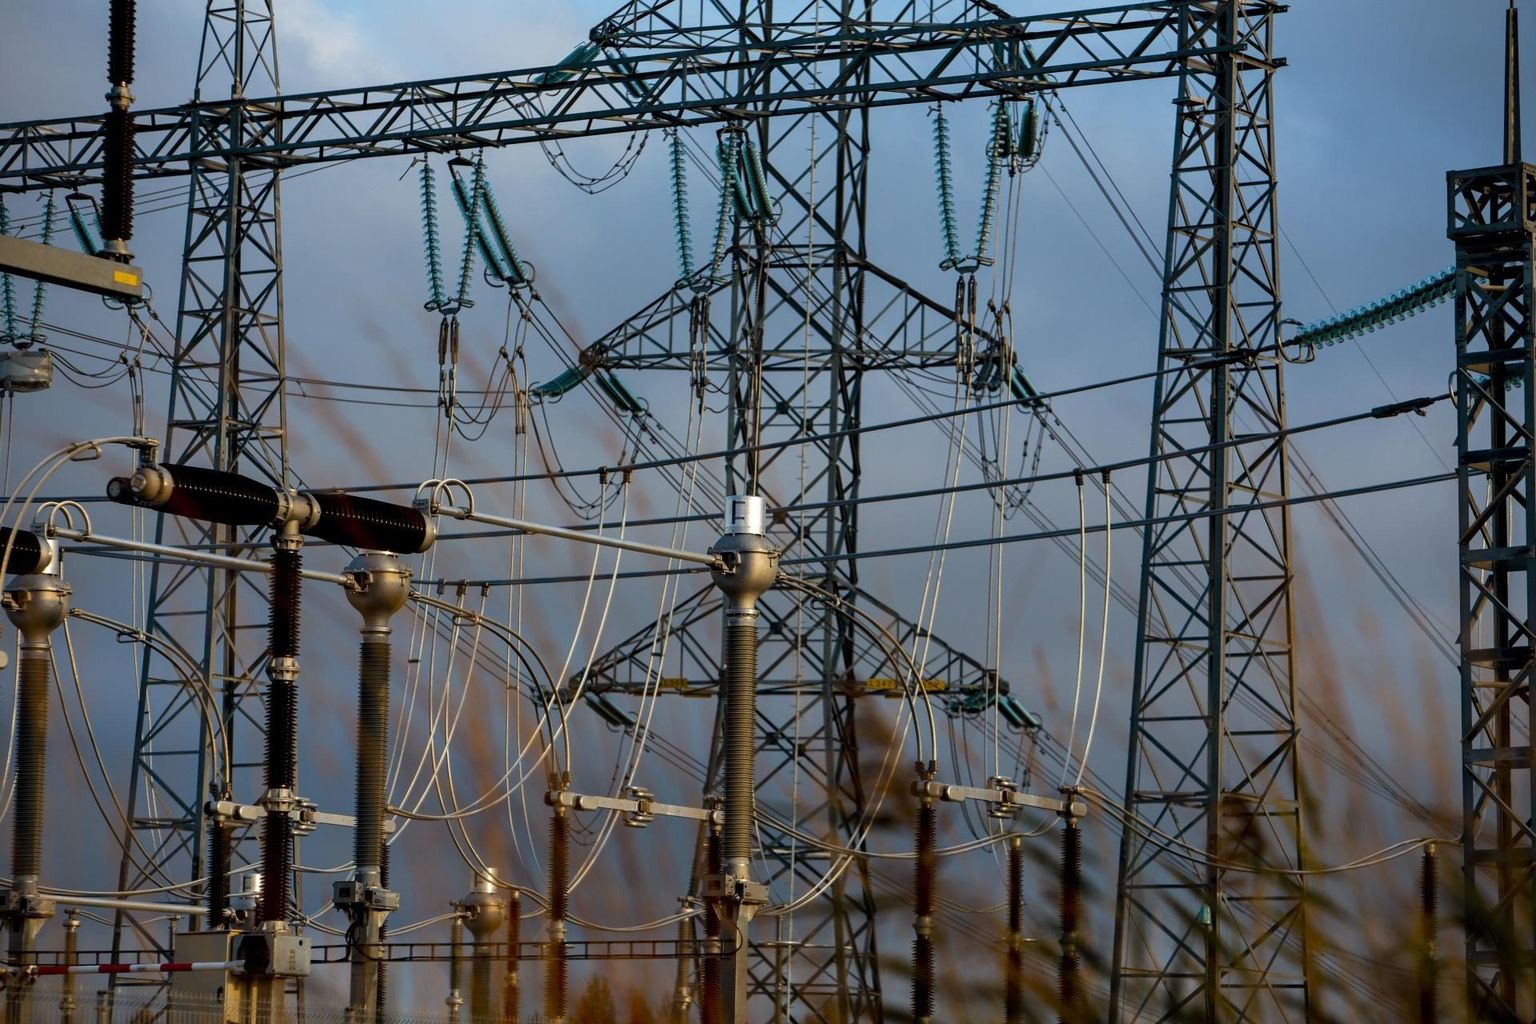 Vene elektrivõrk tagab Balti riikides voolusageduse, samuti pakub vajadusel kiiret reservtootmist, kui mõni kohalik elektrijaam peaks rikki minema.